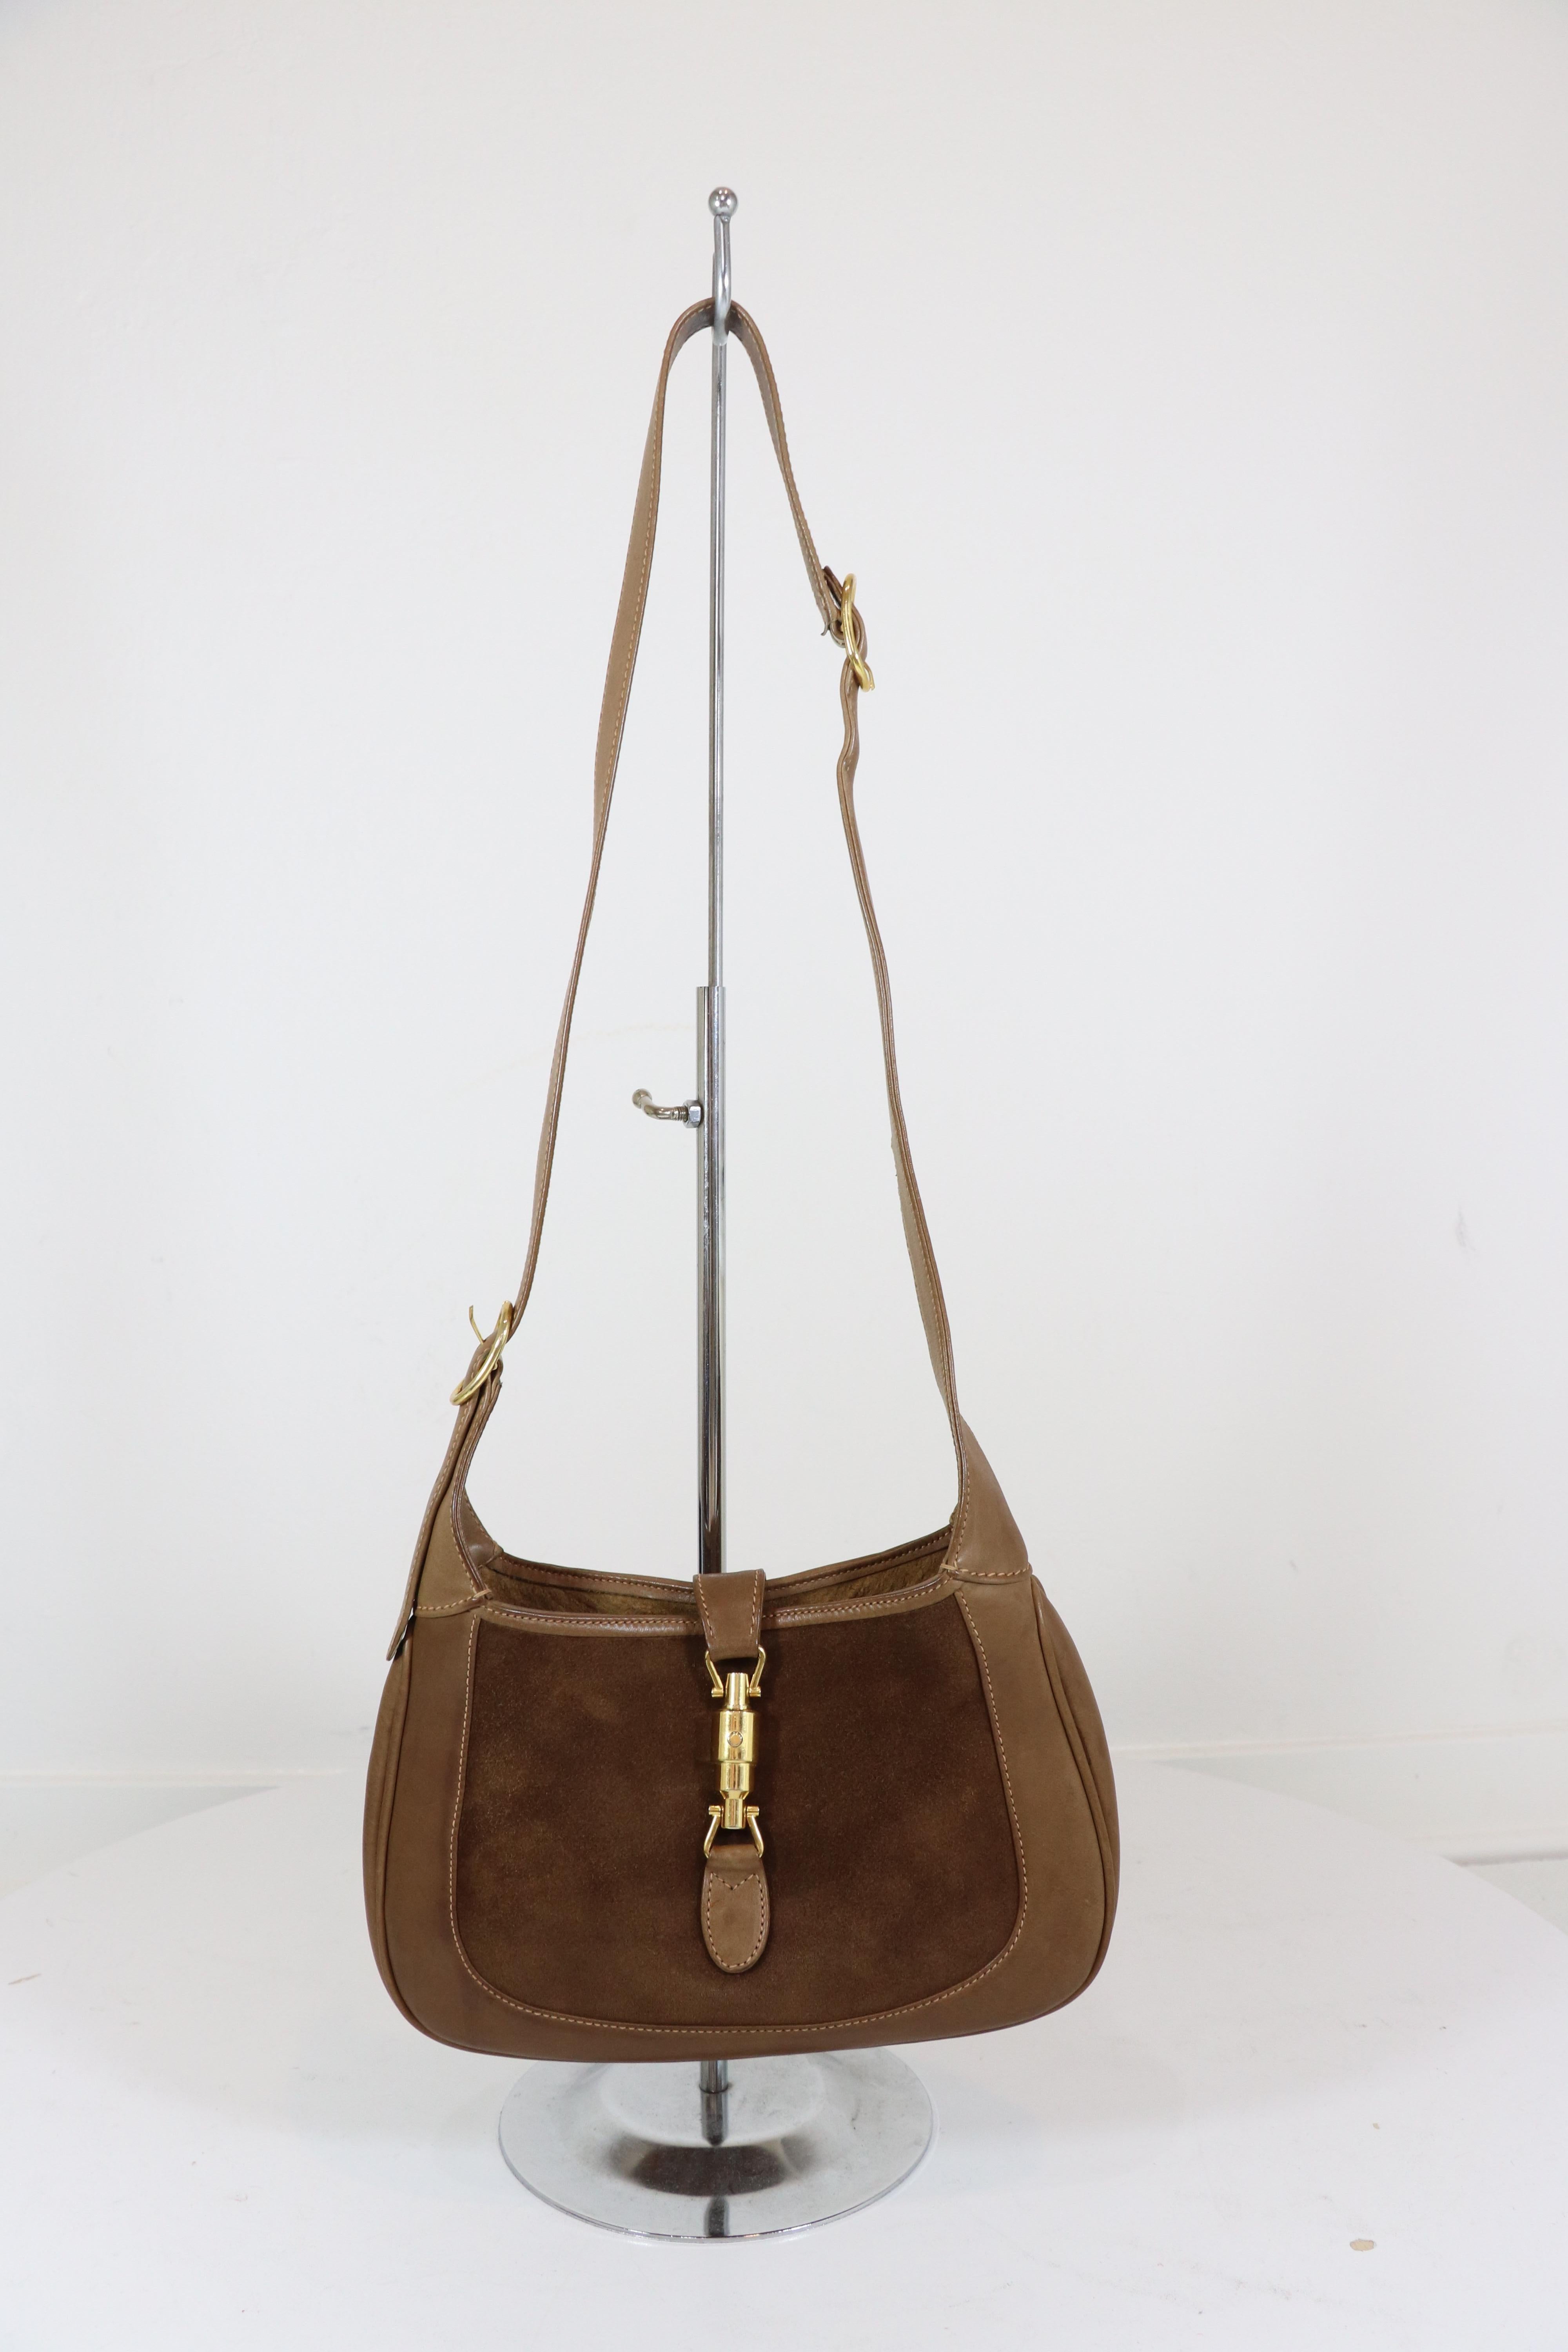 Petit sac Jackie O vintage Gucci des années 1970:: en daim marron moyen:: avec une poignée et une garniture en cuir de veau marron et un fermoir à piston de couleur dorée sur le devant. L'intérieur est entièrement doublé avec une poche zippée. Le